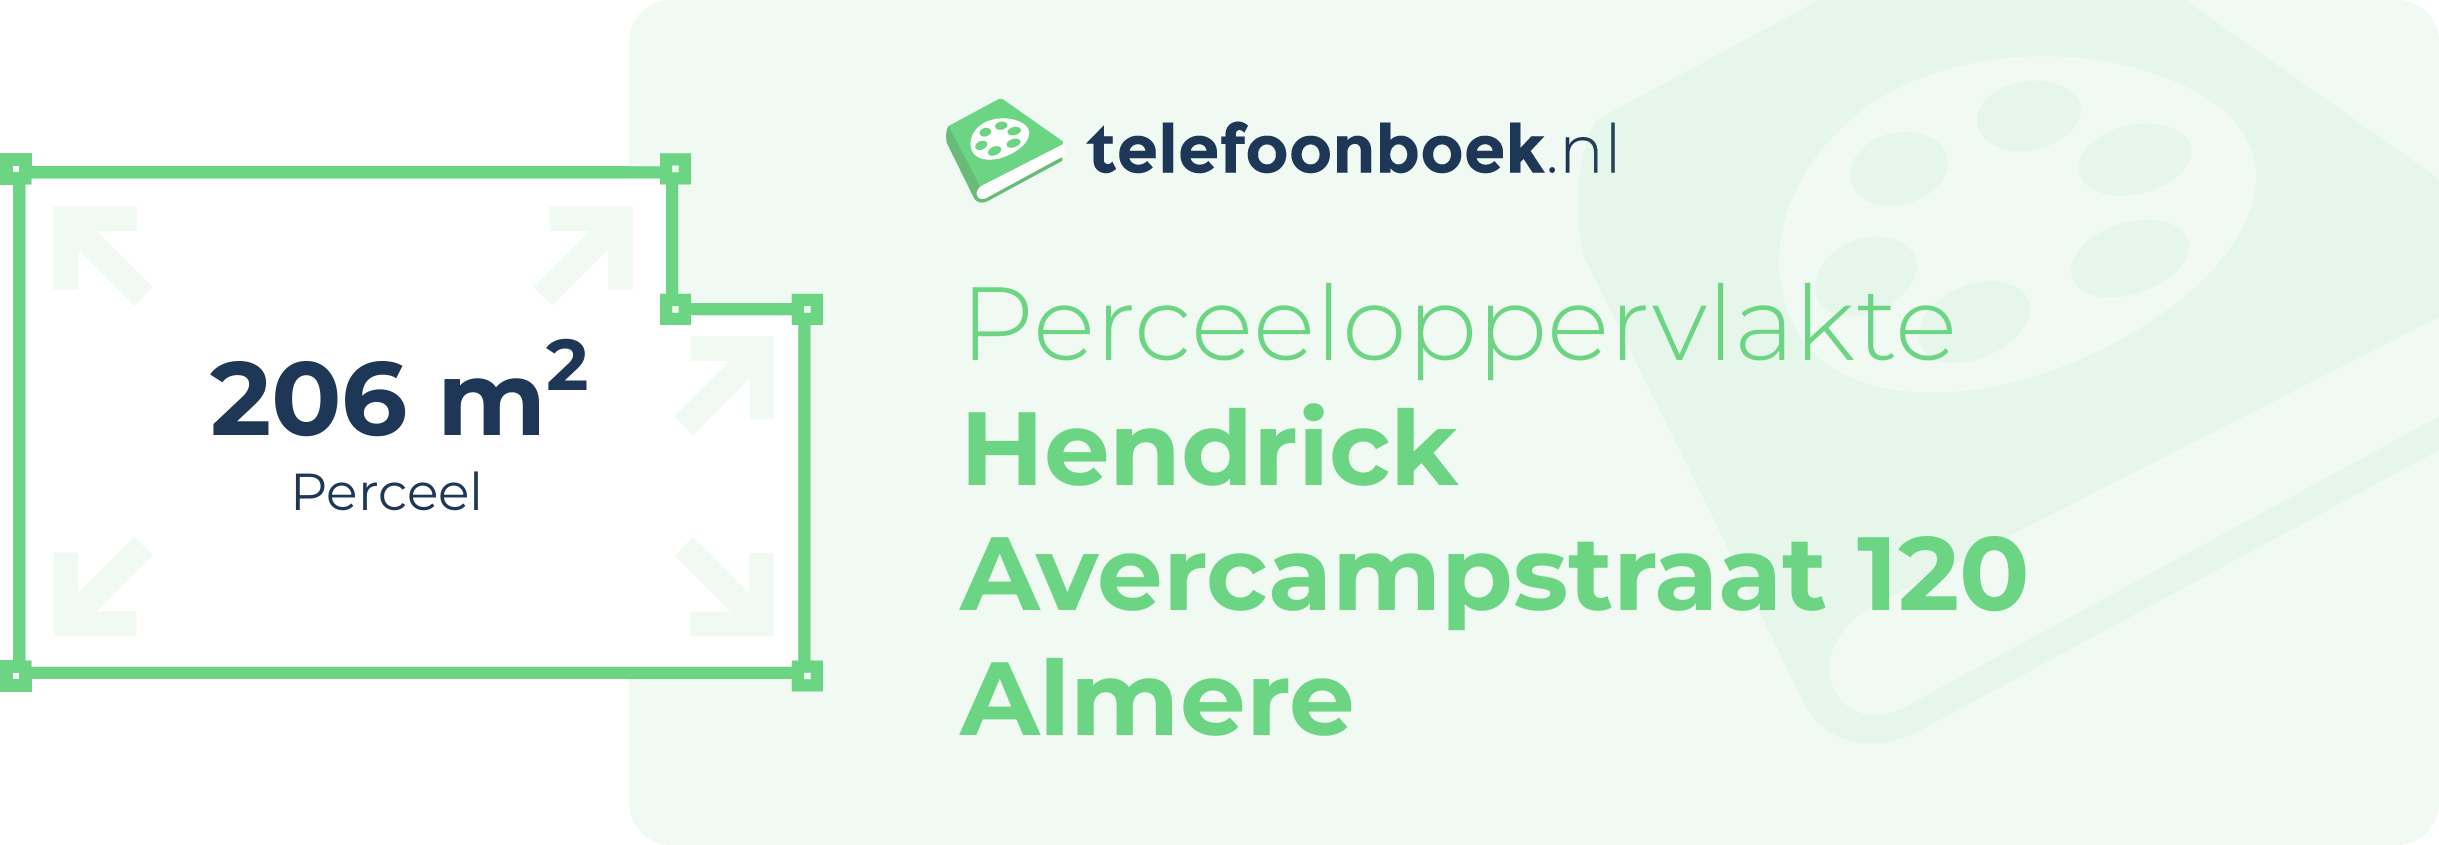 Perceeloppervlakte Hendrick Avercampstraat 120 Almere